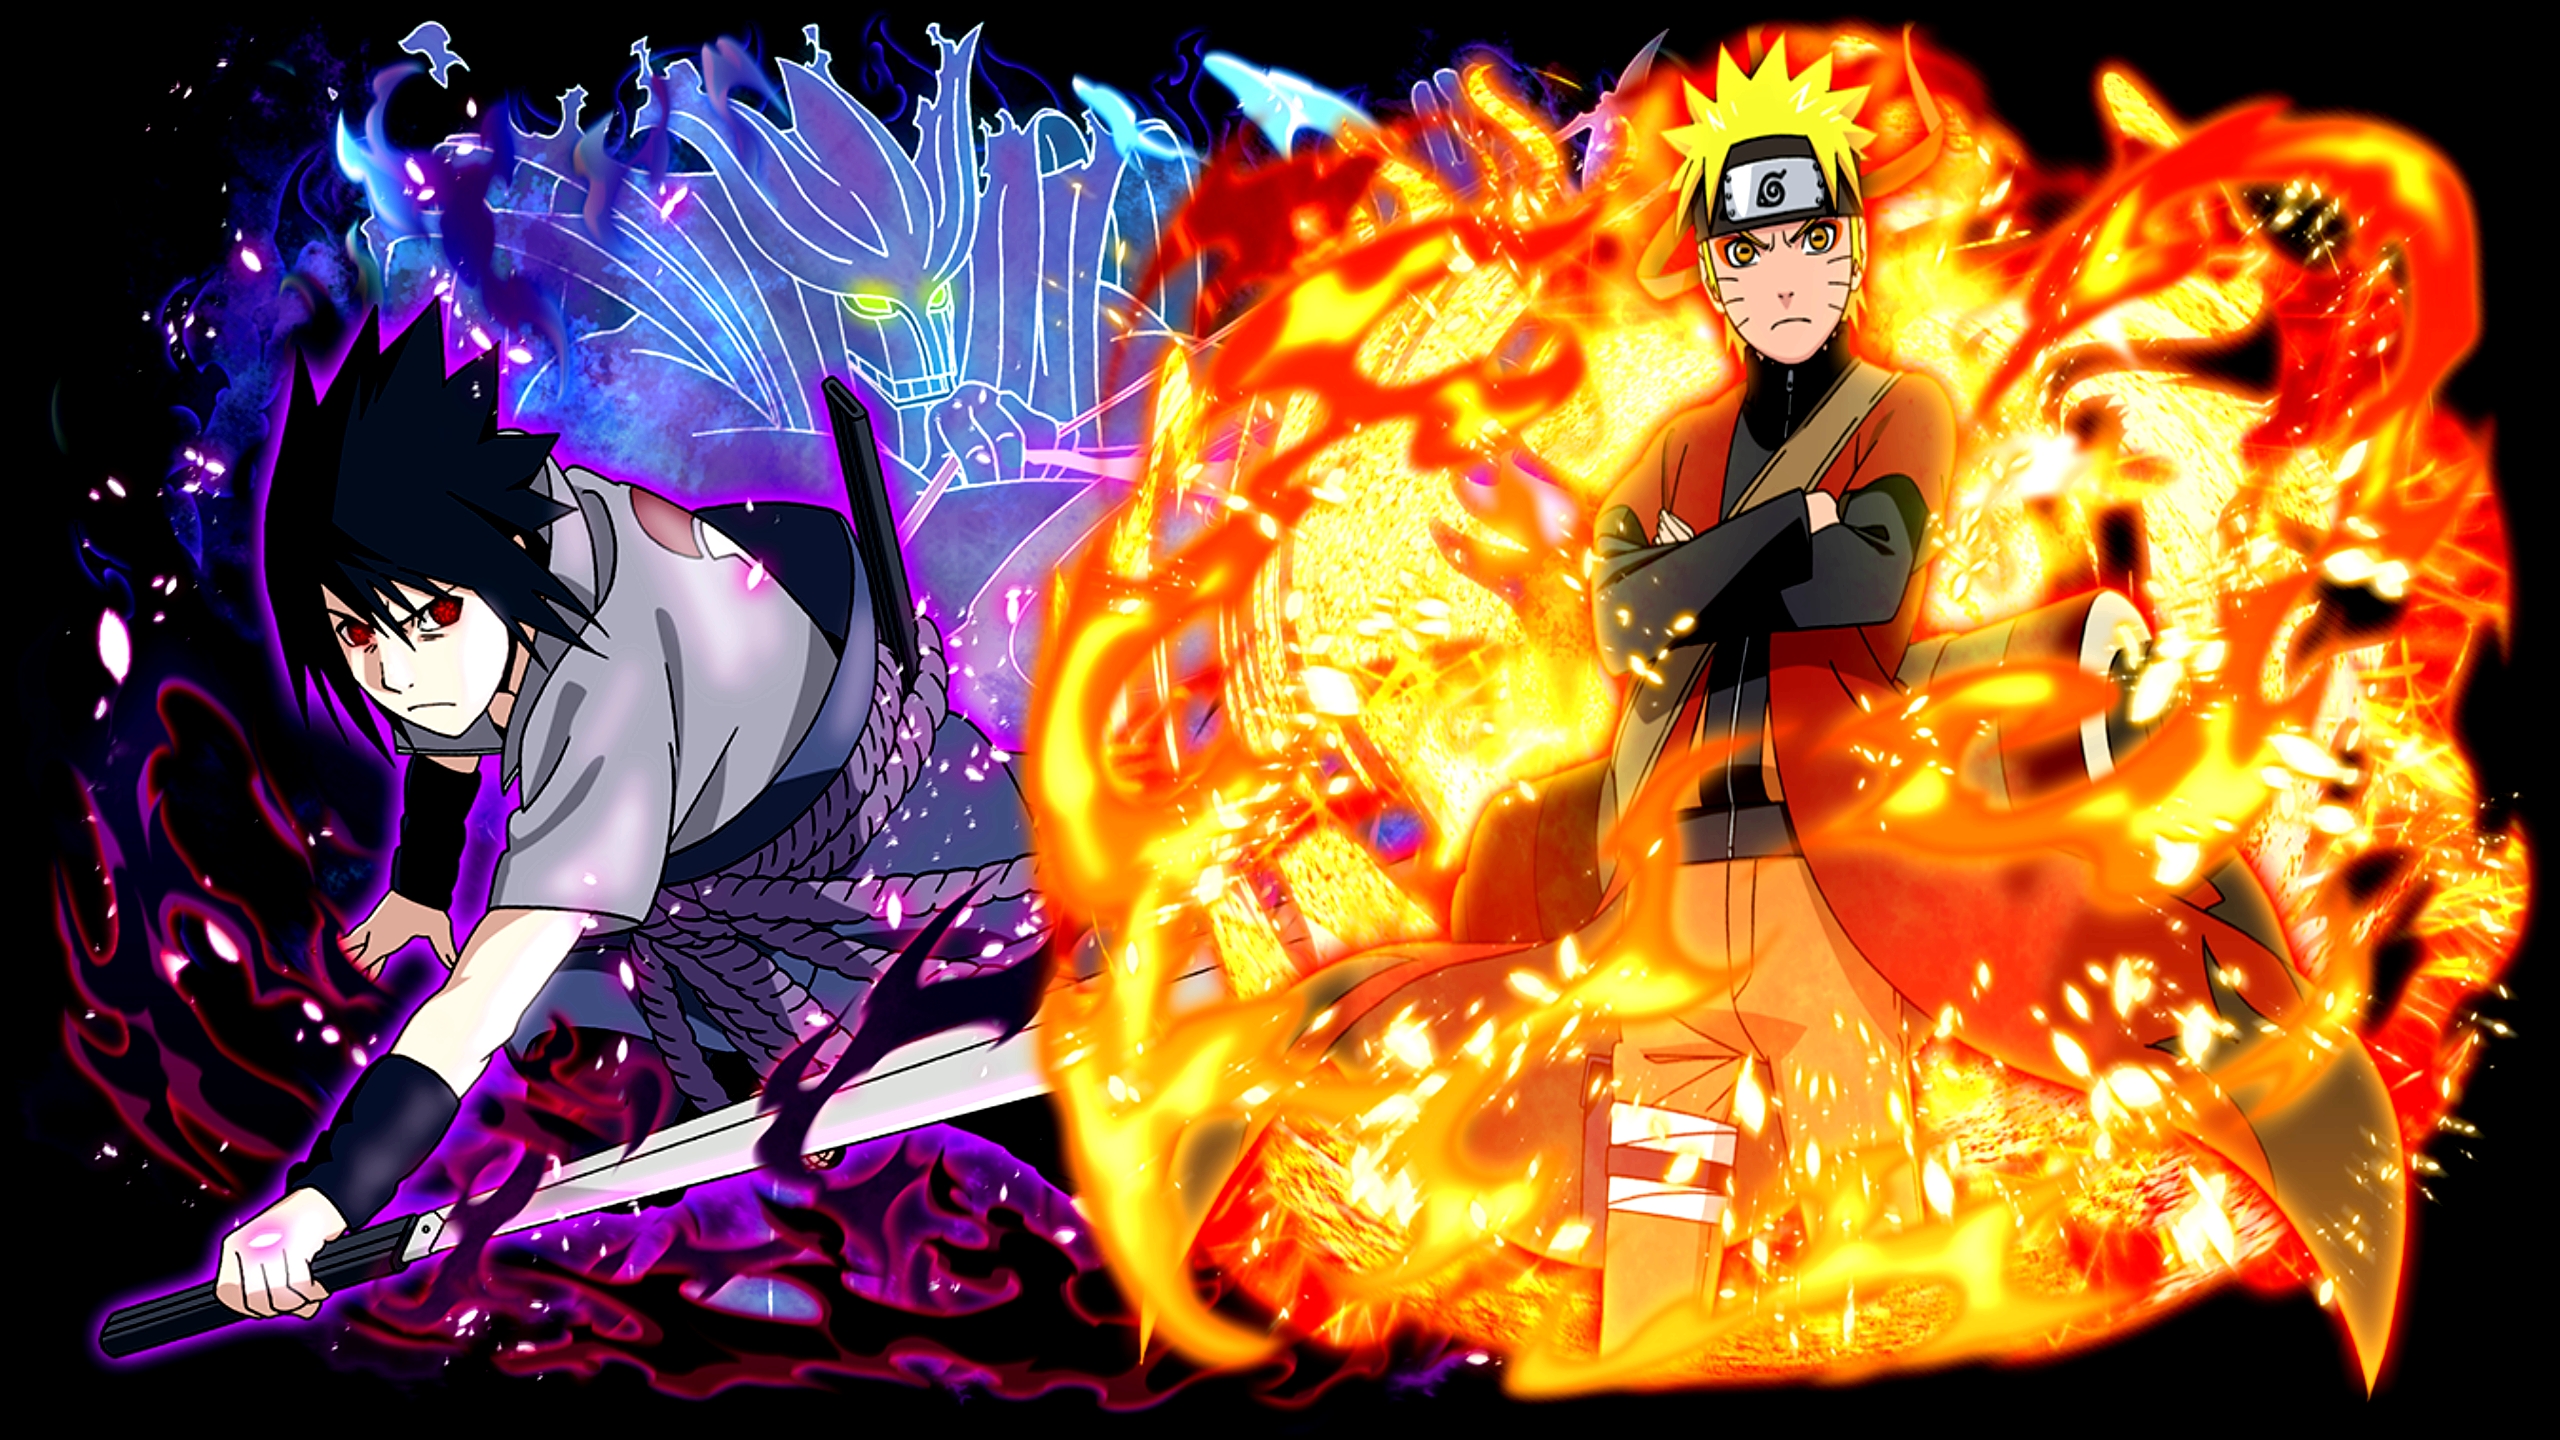 Naruto Uzumaki & Sasuke Uchiha